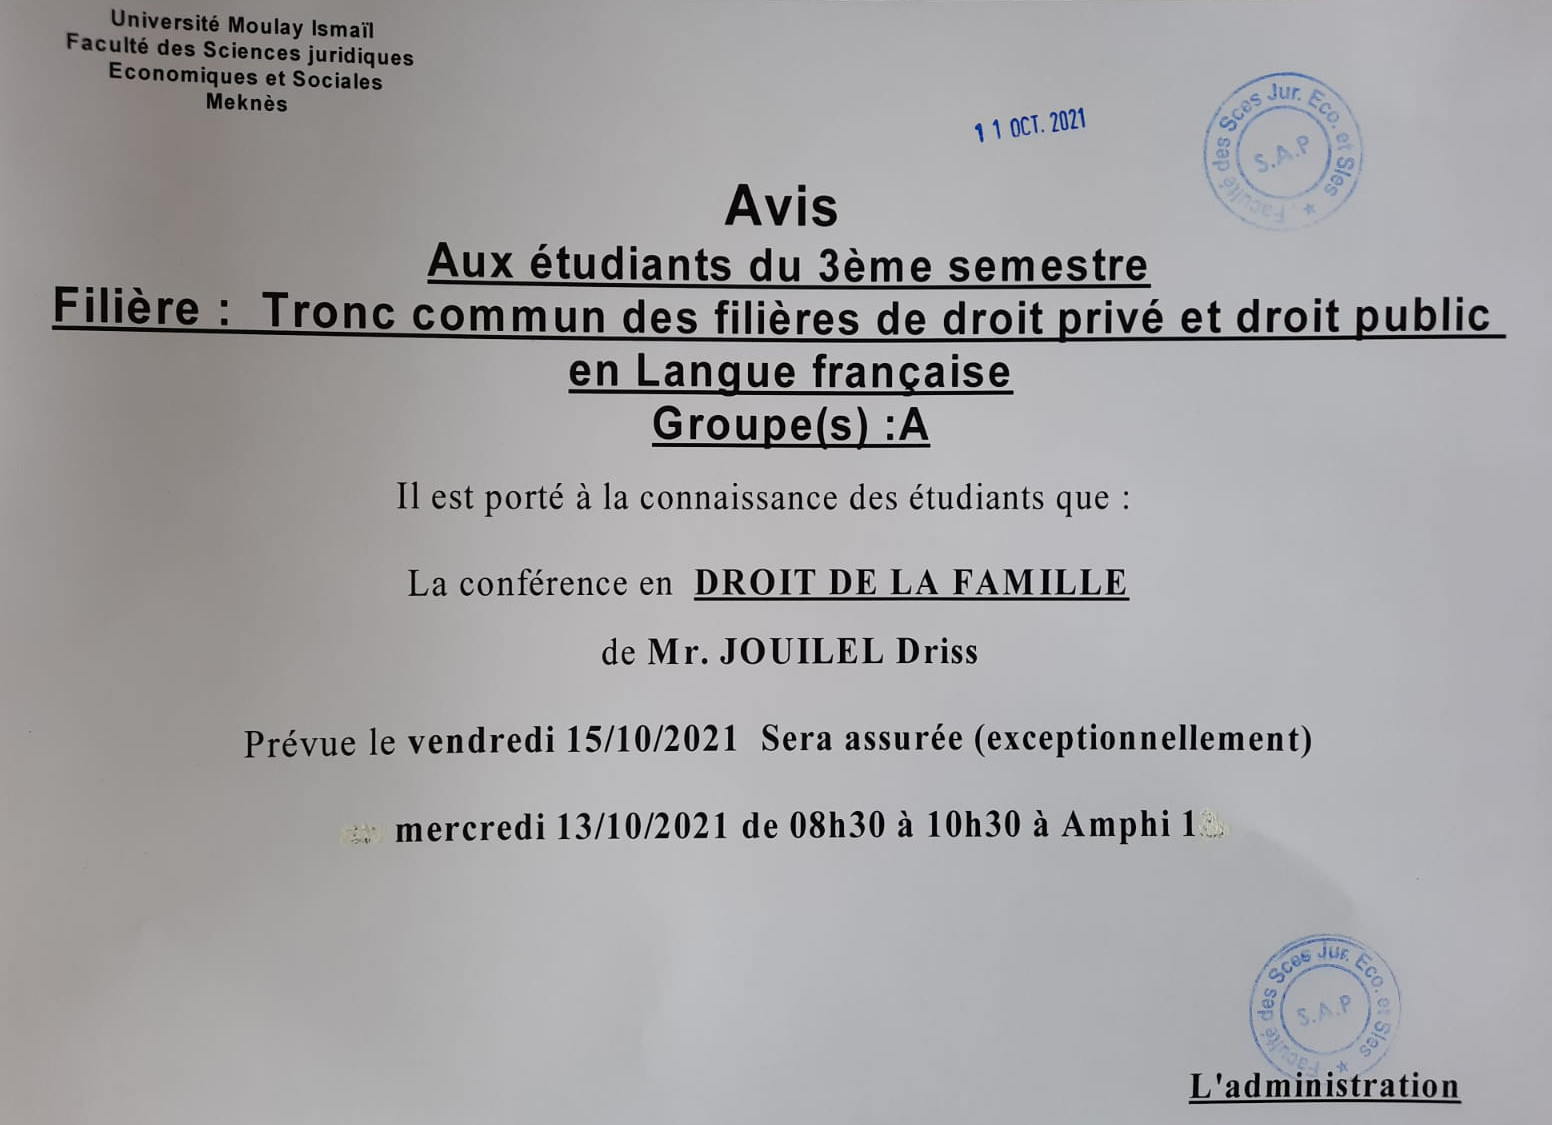 Avis aux étudiants du 3ème semestre Tronc commun des filières de droit privé et droit public en langue française « Groupe (A) »